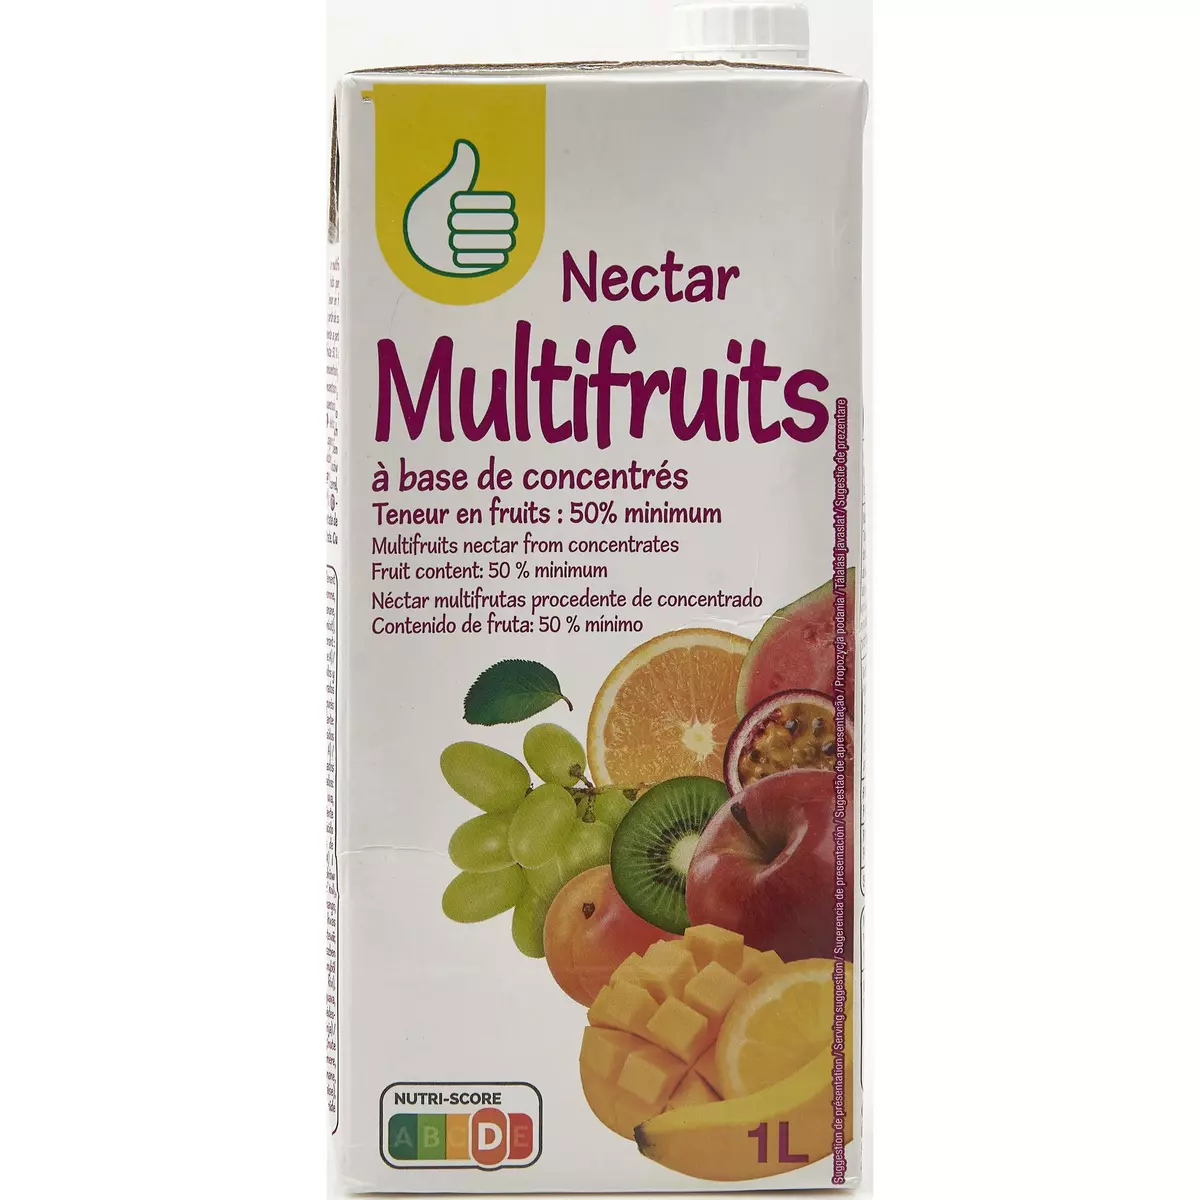 POUCE Nectar multifruits brique 1l